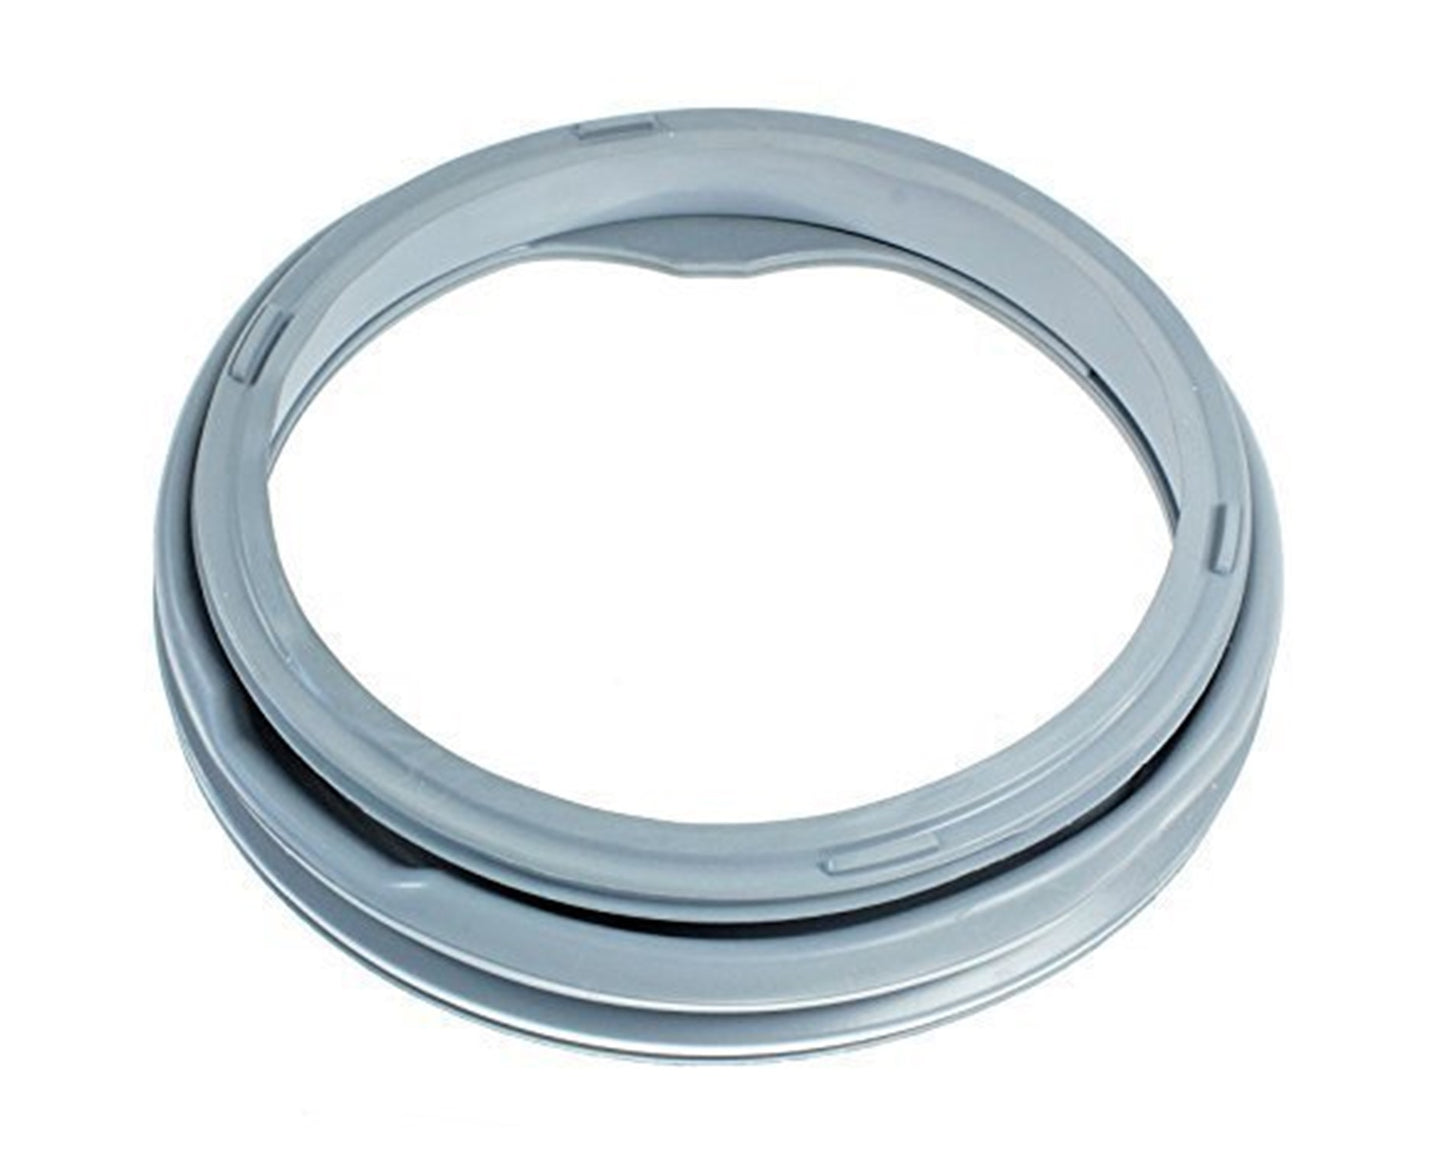 Rubber Window Door Seal Gasket Spare Part for Sharp ESFA7103A1-EN, ESFA7103A1-PL, ESFA7123A1-EN Washing Machine